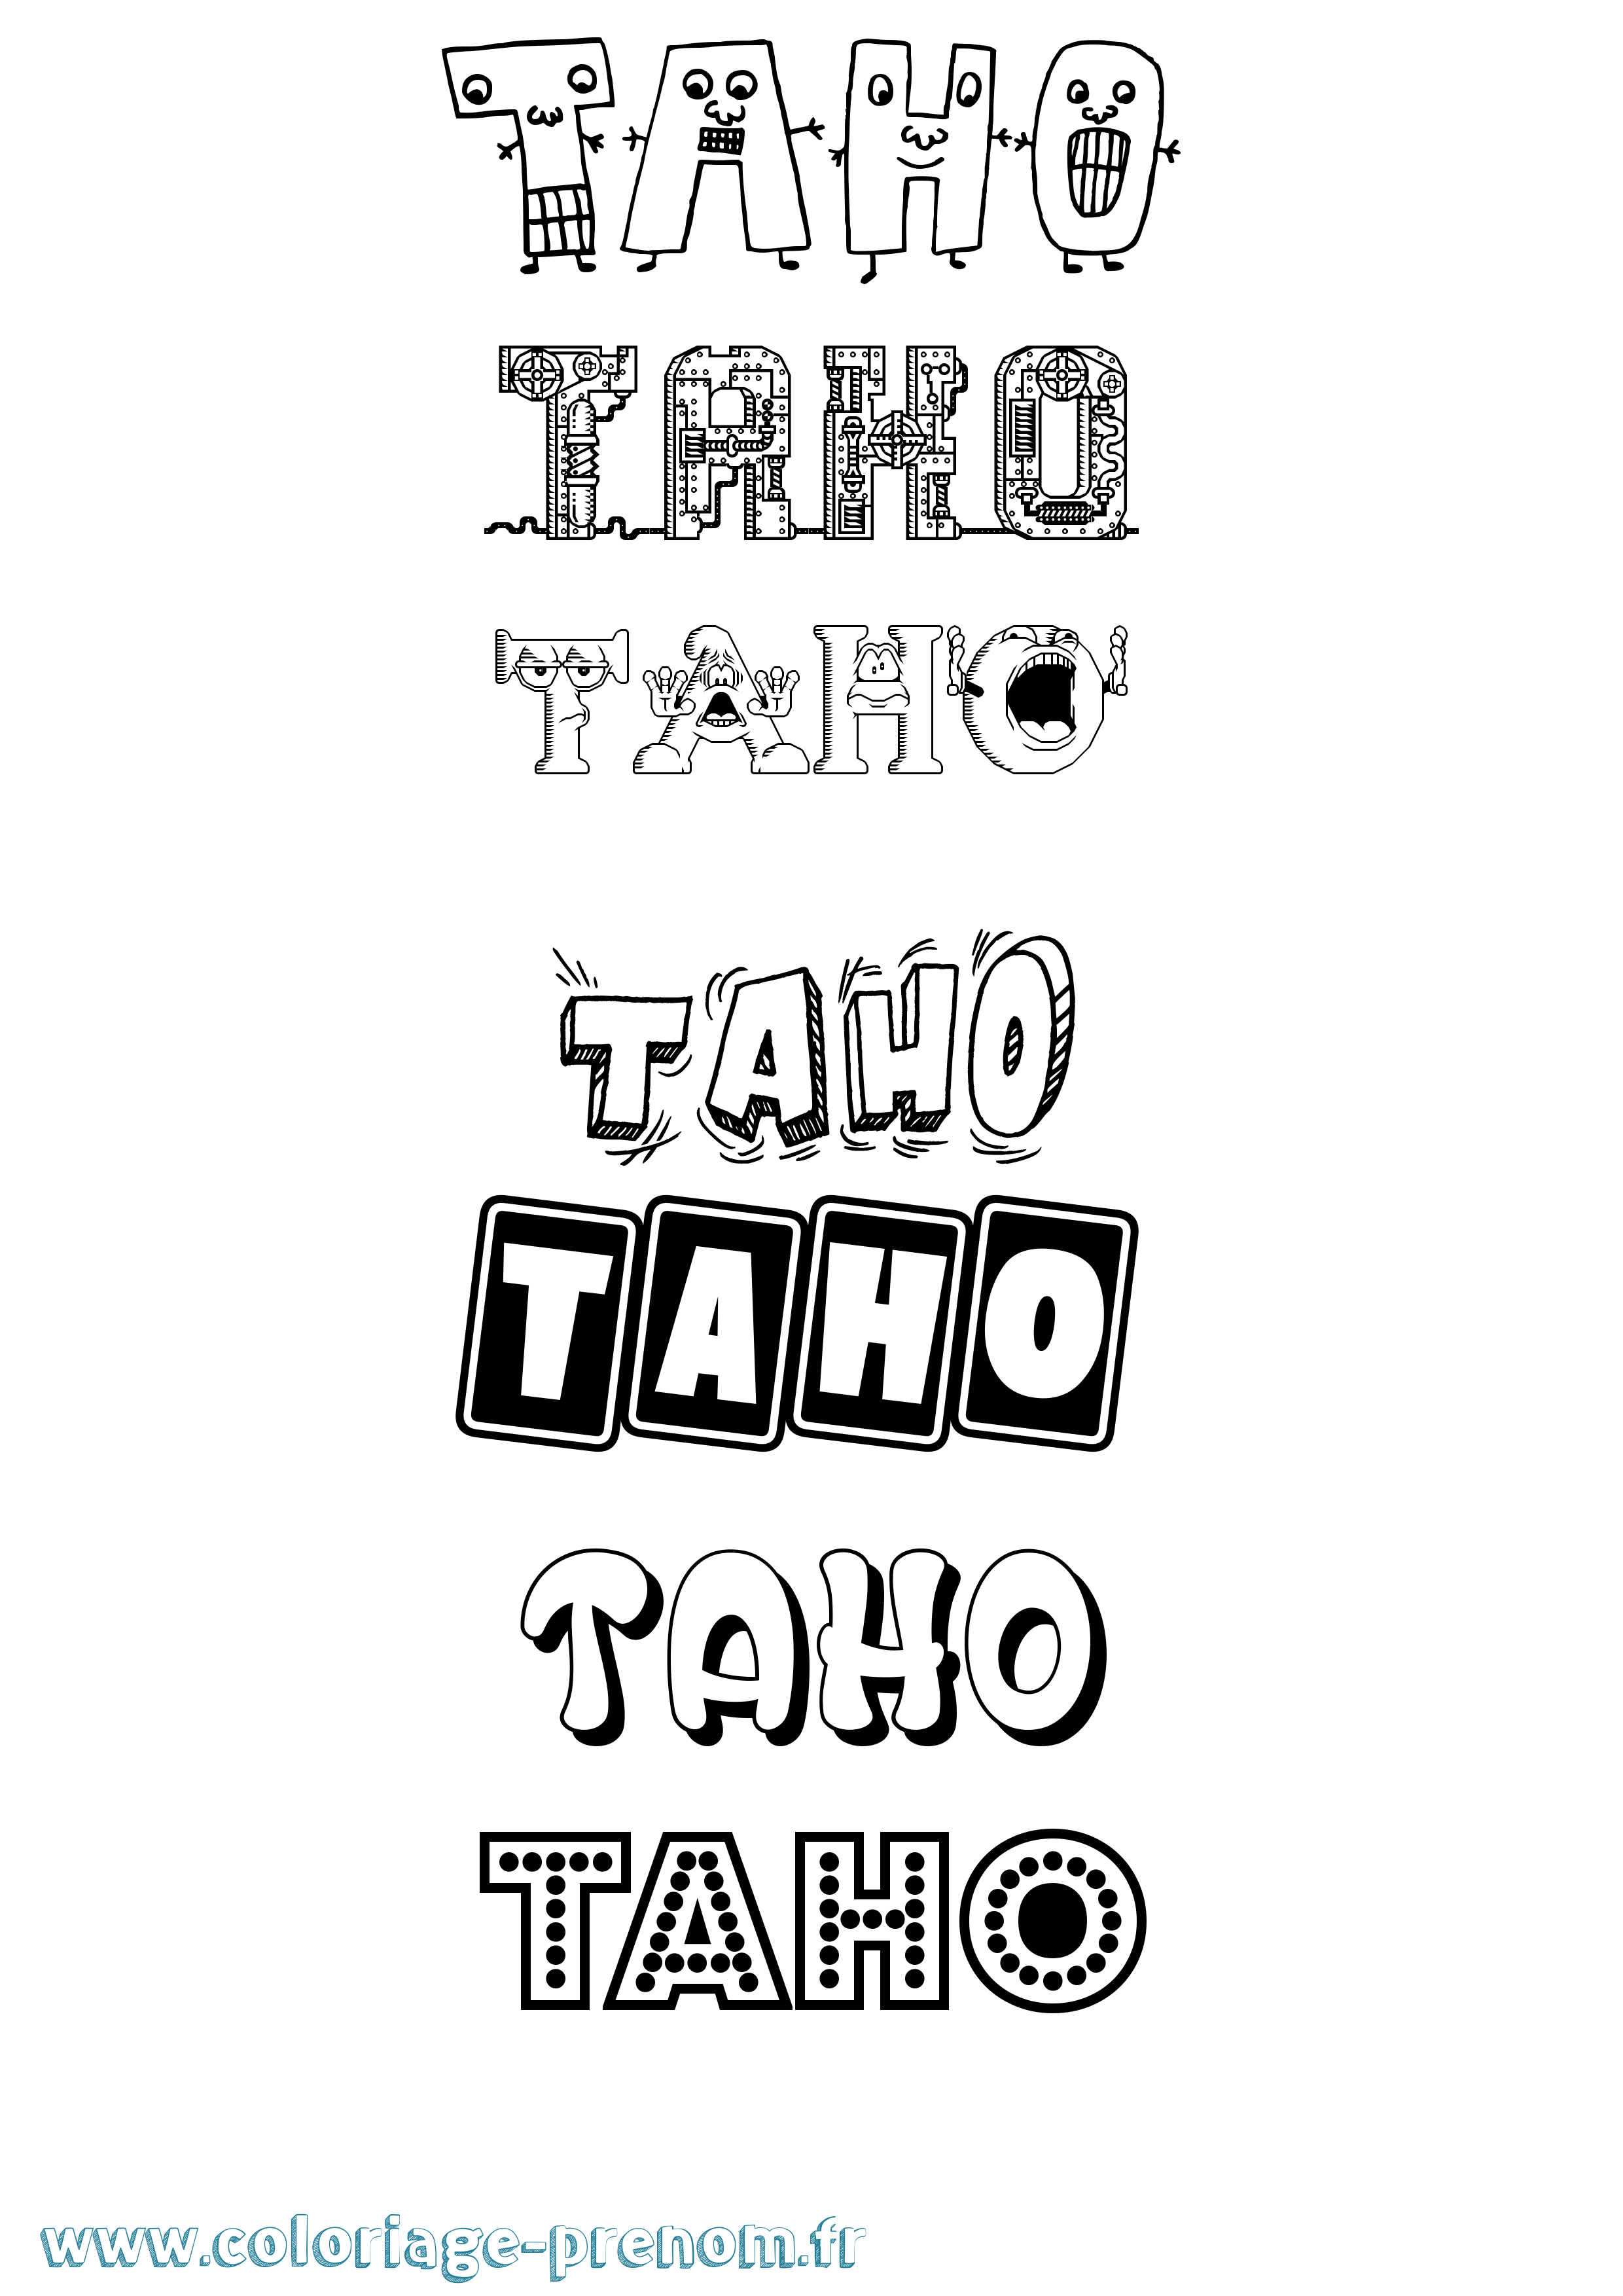 Coloriage prénom Taho Fun